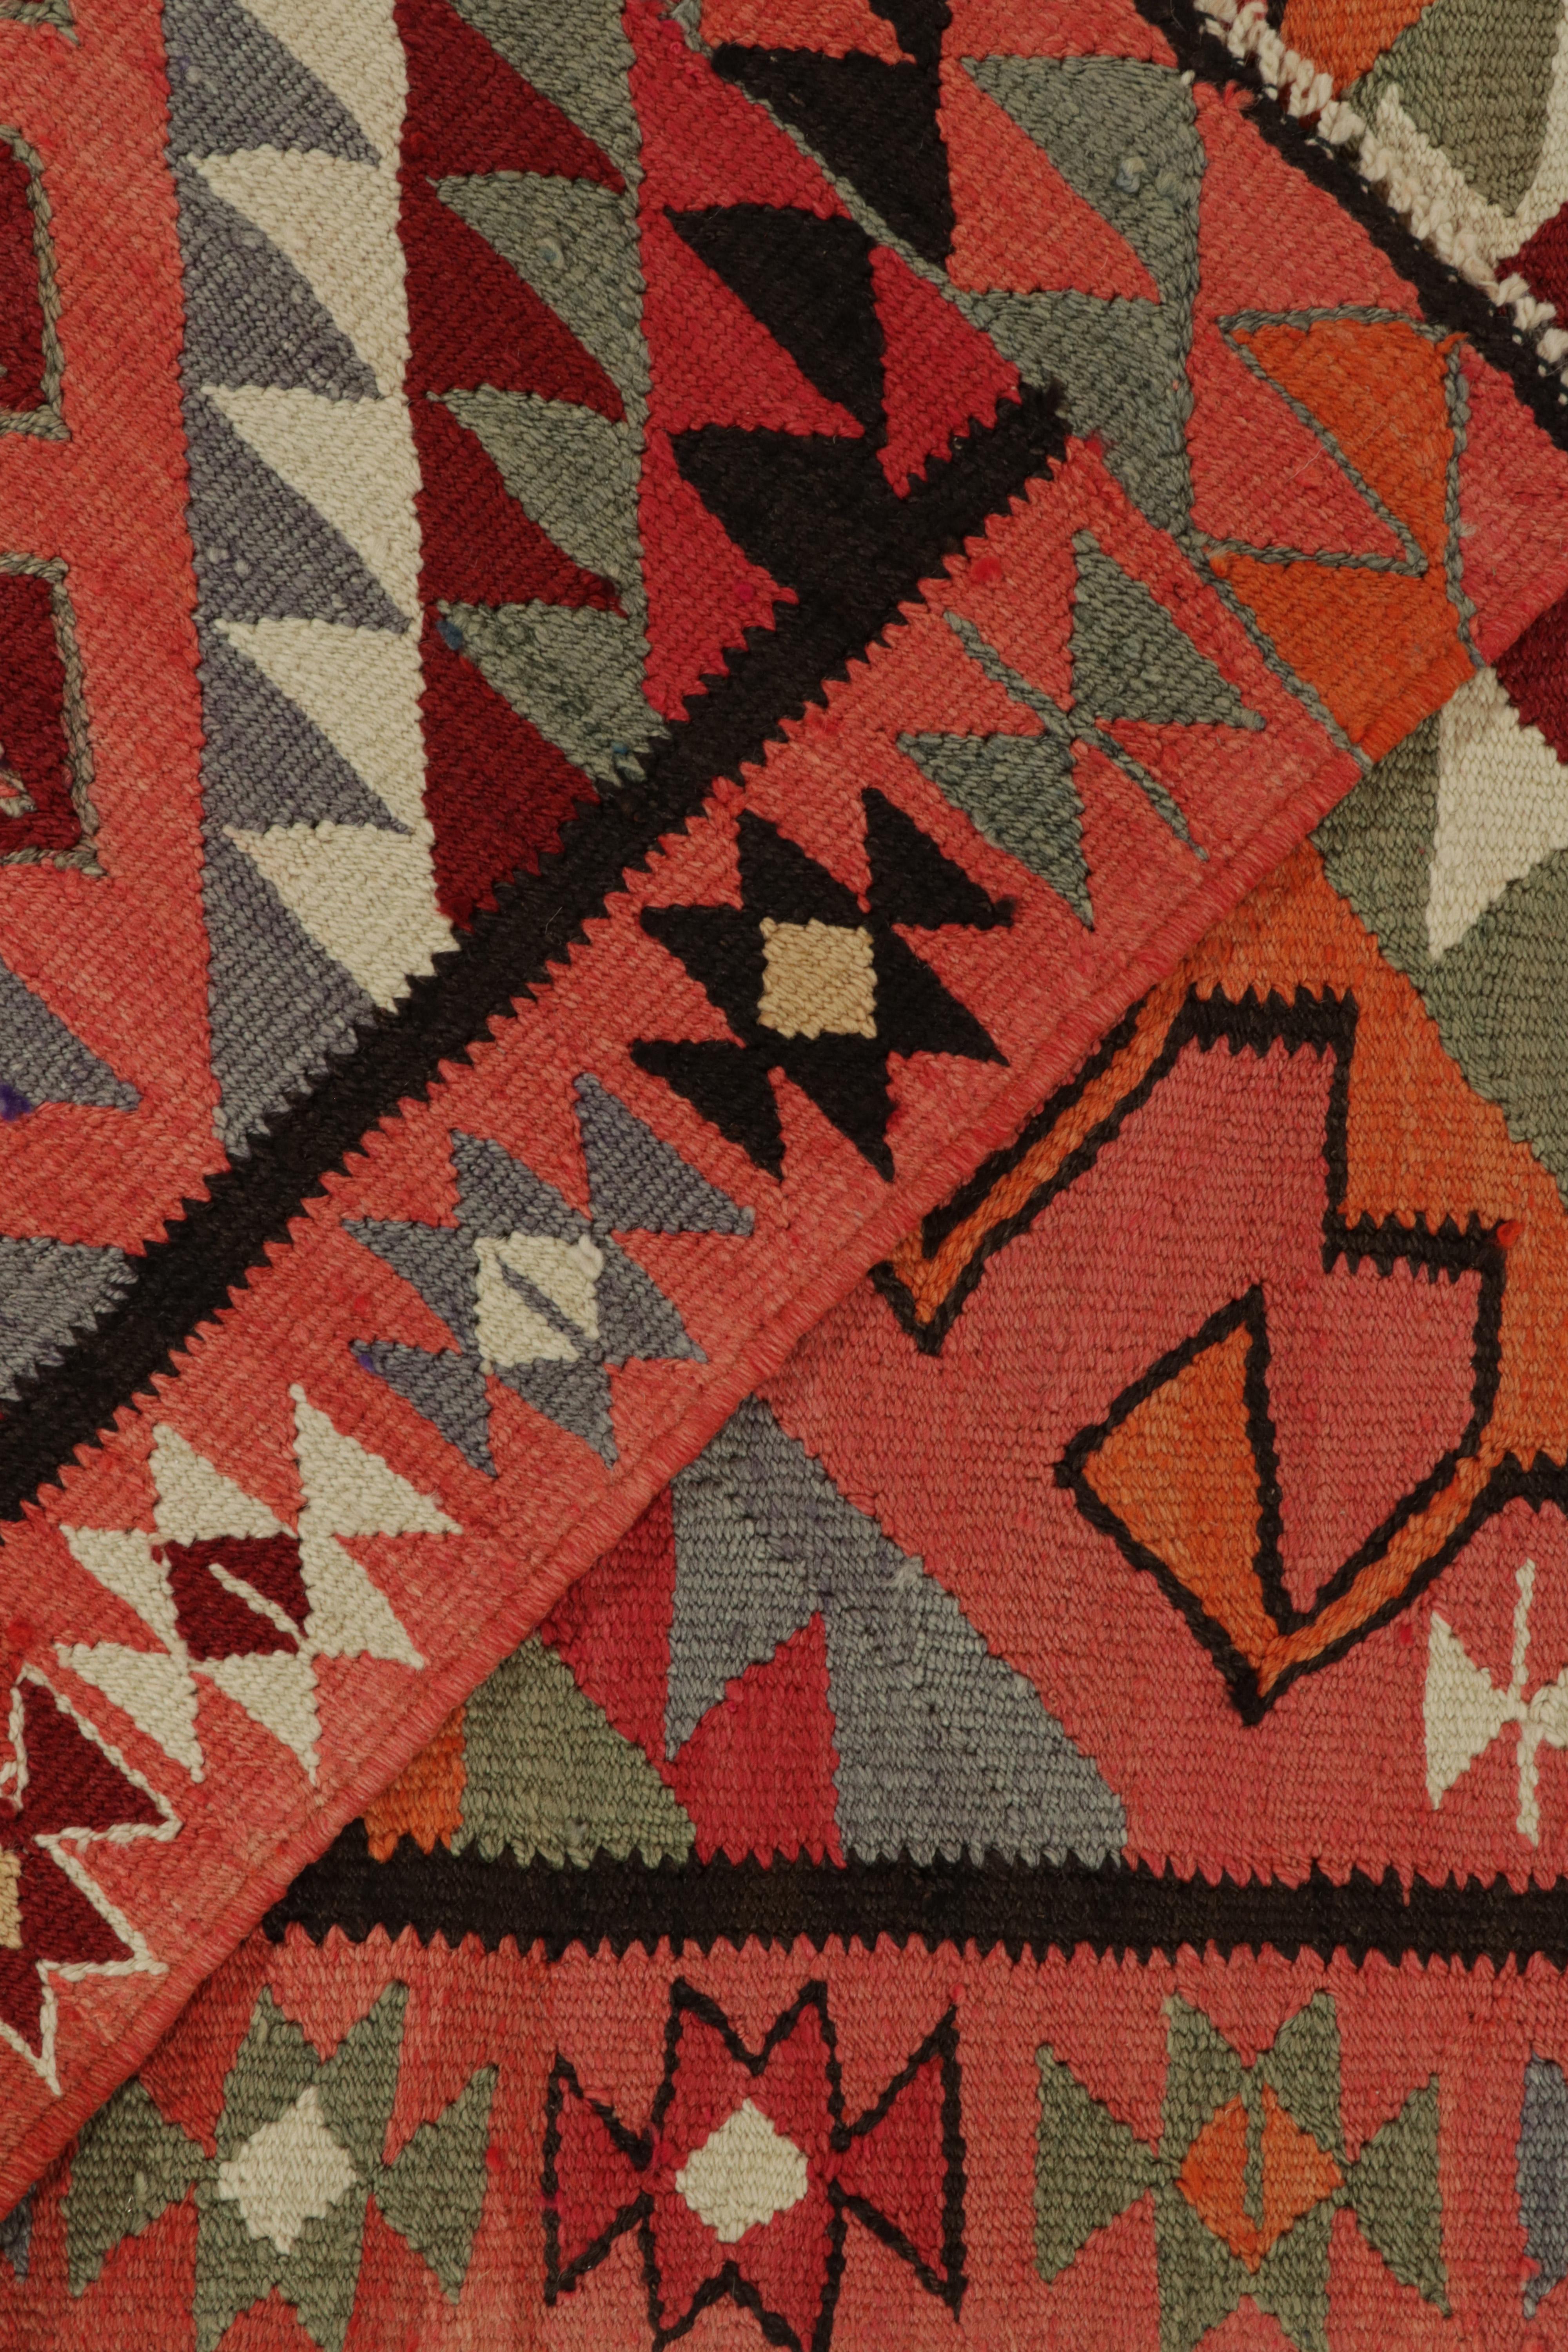 Wool Vintage Kilim Tribal Runner in Multicolor Geometric Patterns by Rug & Kilim For Sale